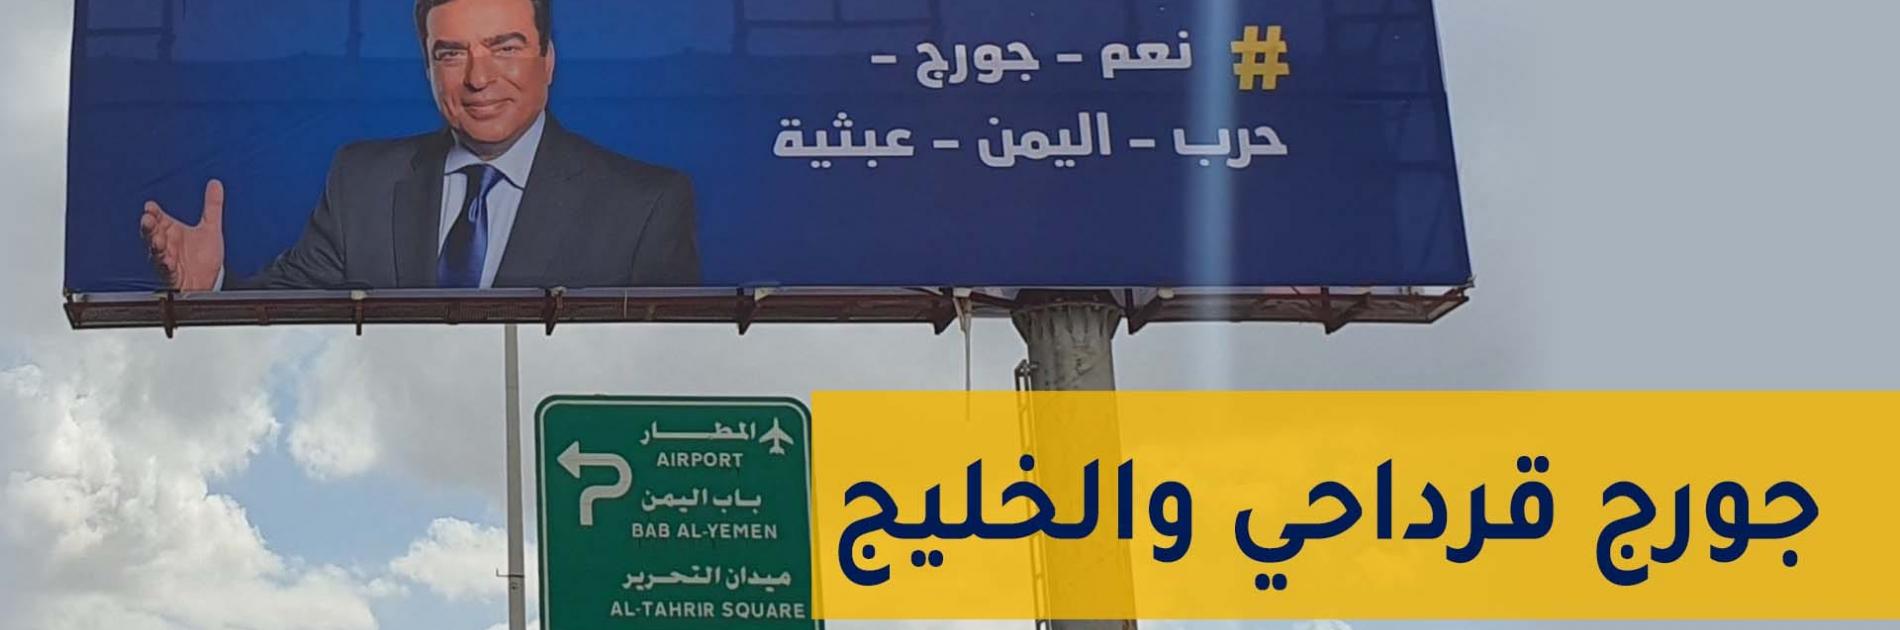 جورج قرداحي.. وزير إيران والأسد في لبنان يفجر أزمة مع الخليج